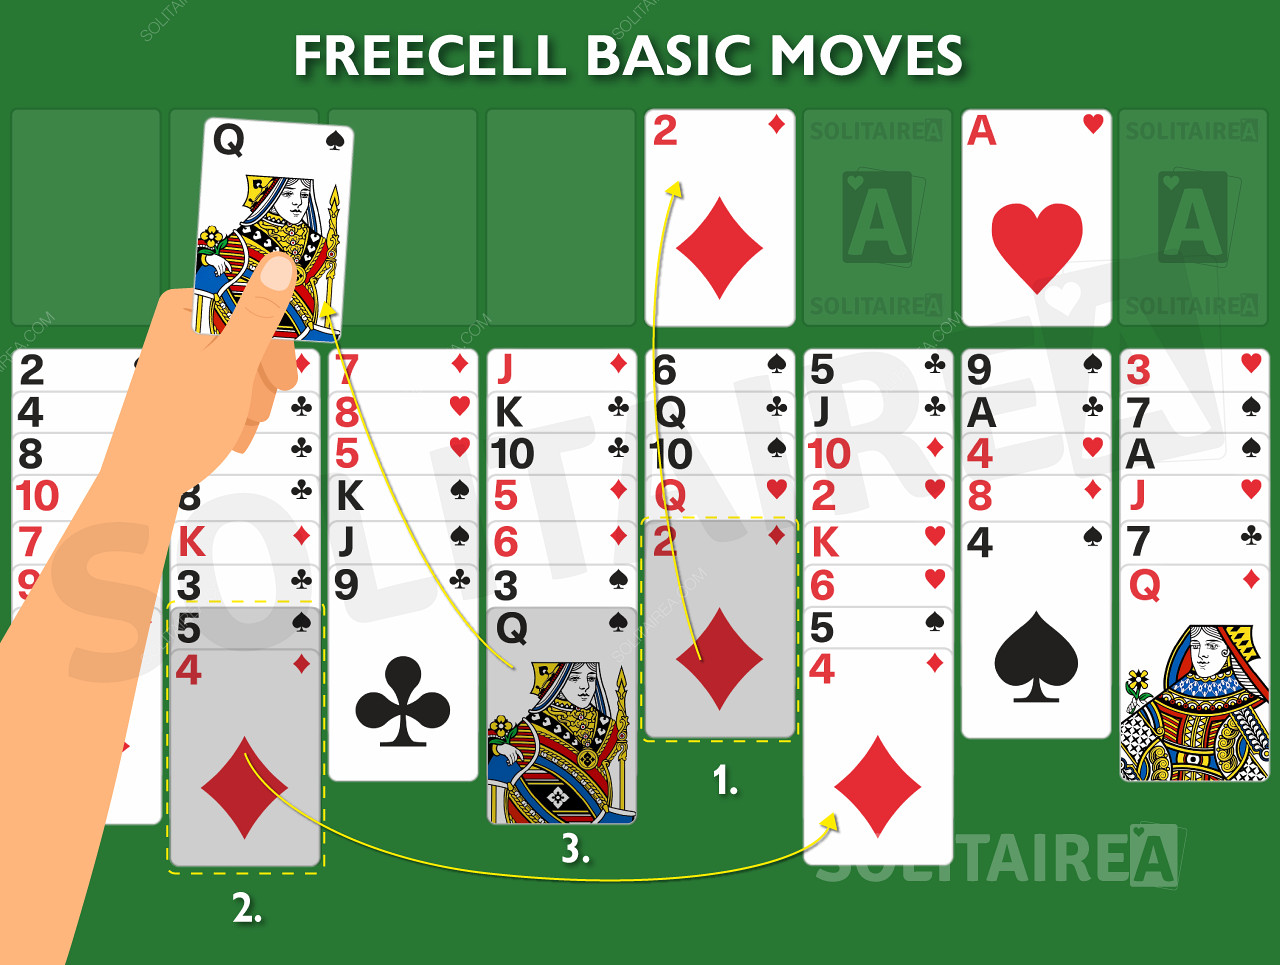 Spillbilde som viser de grunnleggende reglene i aksjon